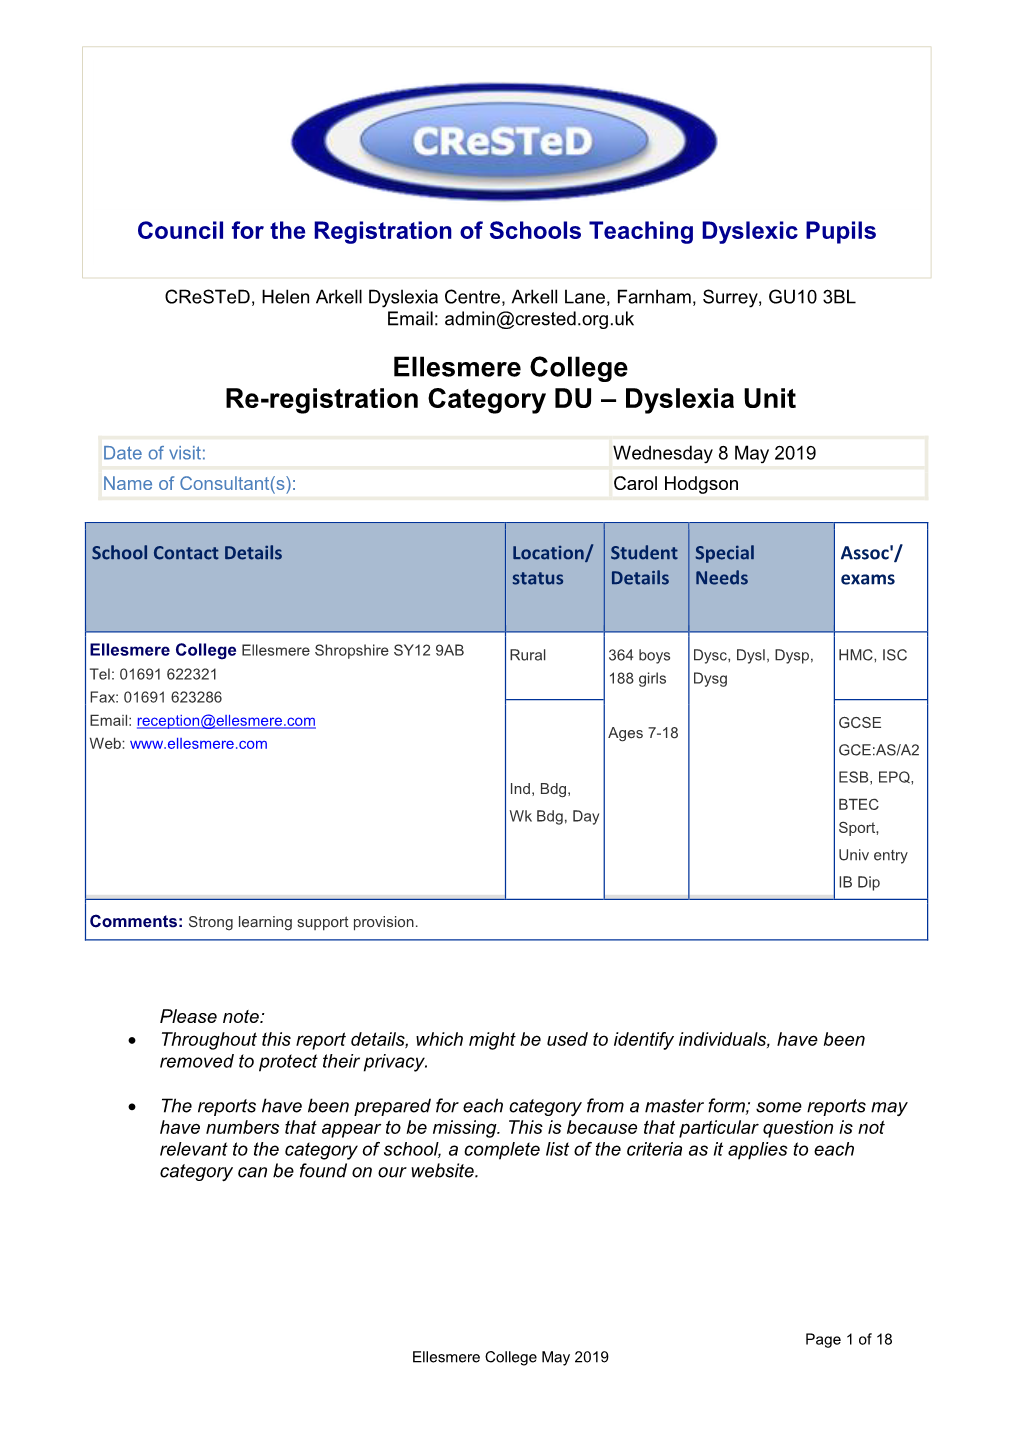 Ellesmere College Re-Registration Category DU – Dyslexia Unit